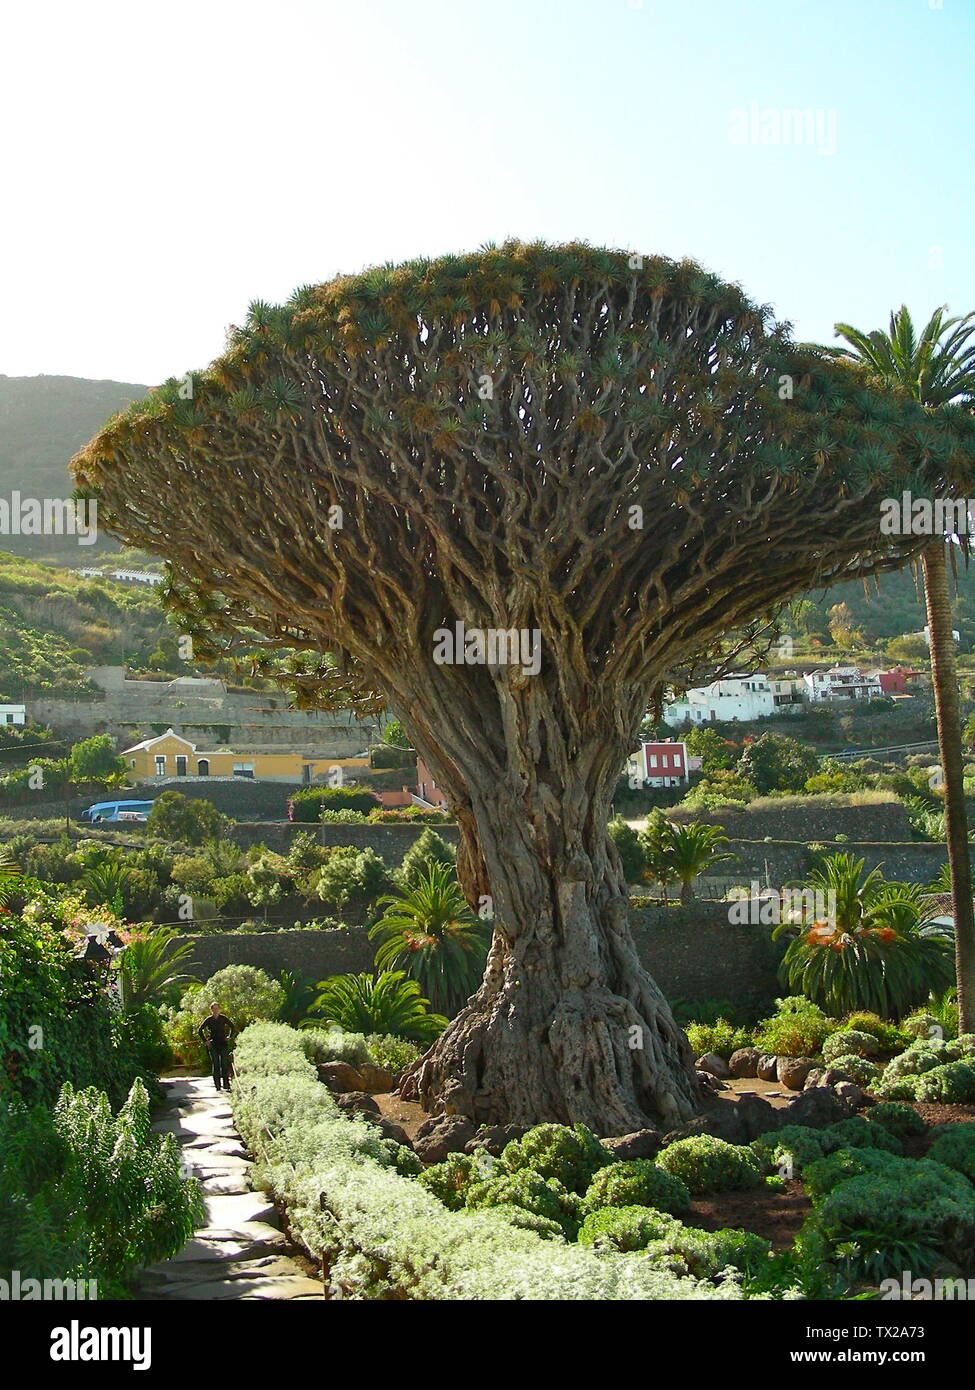 GrÃ¶ÃŸter Drachenbaum auf den kanarischen Inseln; um 2006 herum; Own work (Original text:  Markoz); Markoz; Stock Photo